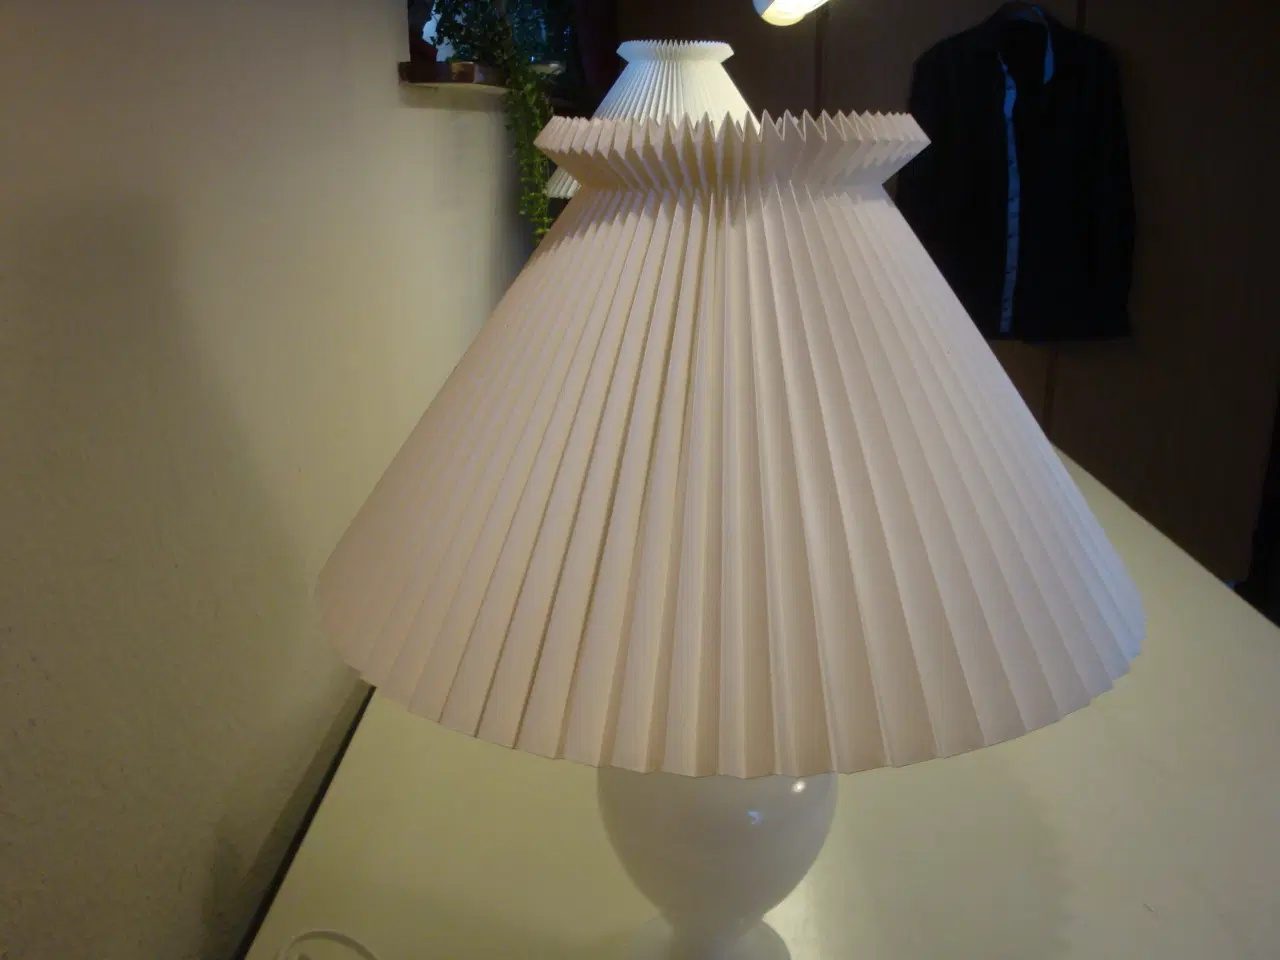 Billede 4 - Holmegård bordlampe Le Klint skærm - sender gerne